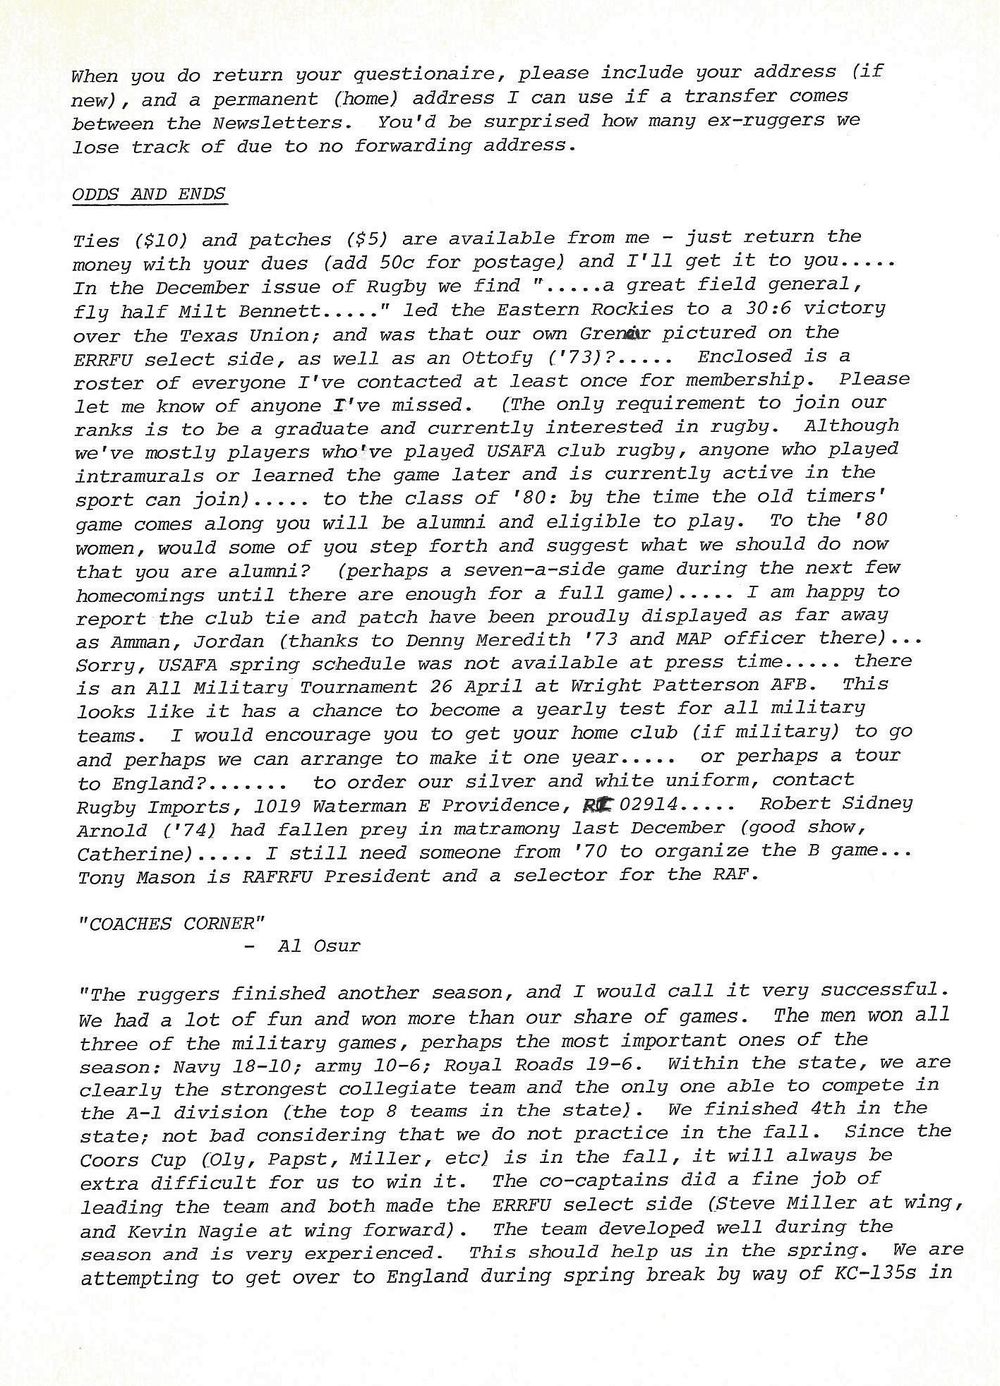 1980 02 Newsletter 2.jpg